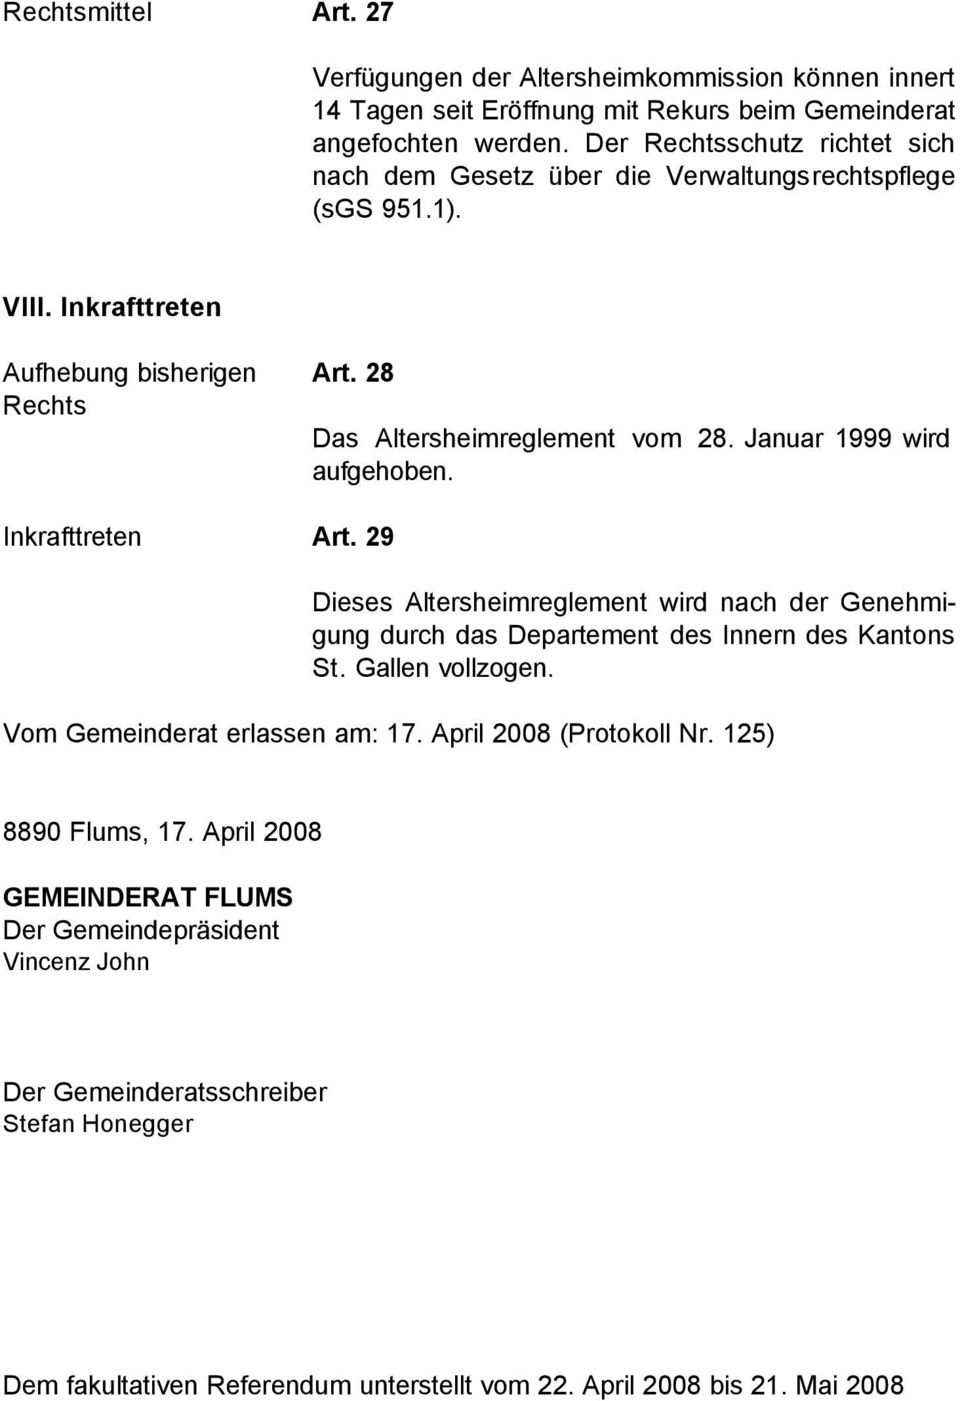 Januar 1999 wird aufgehoben. Inkrafttreten Art. 29 Dieses Altersheimreglement wird nach der Genehmigung durch das Departement des Innern des Kantons St. Gallen vollzogen.